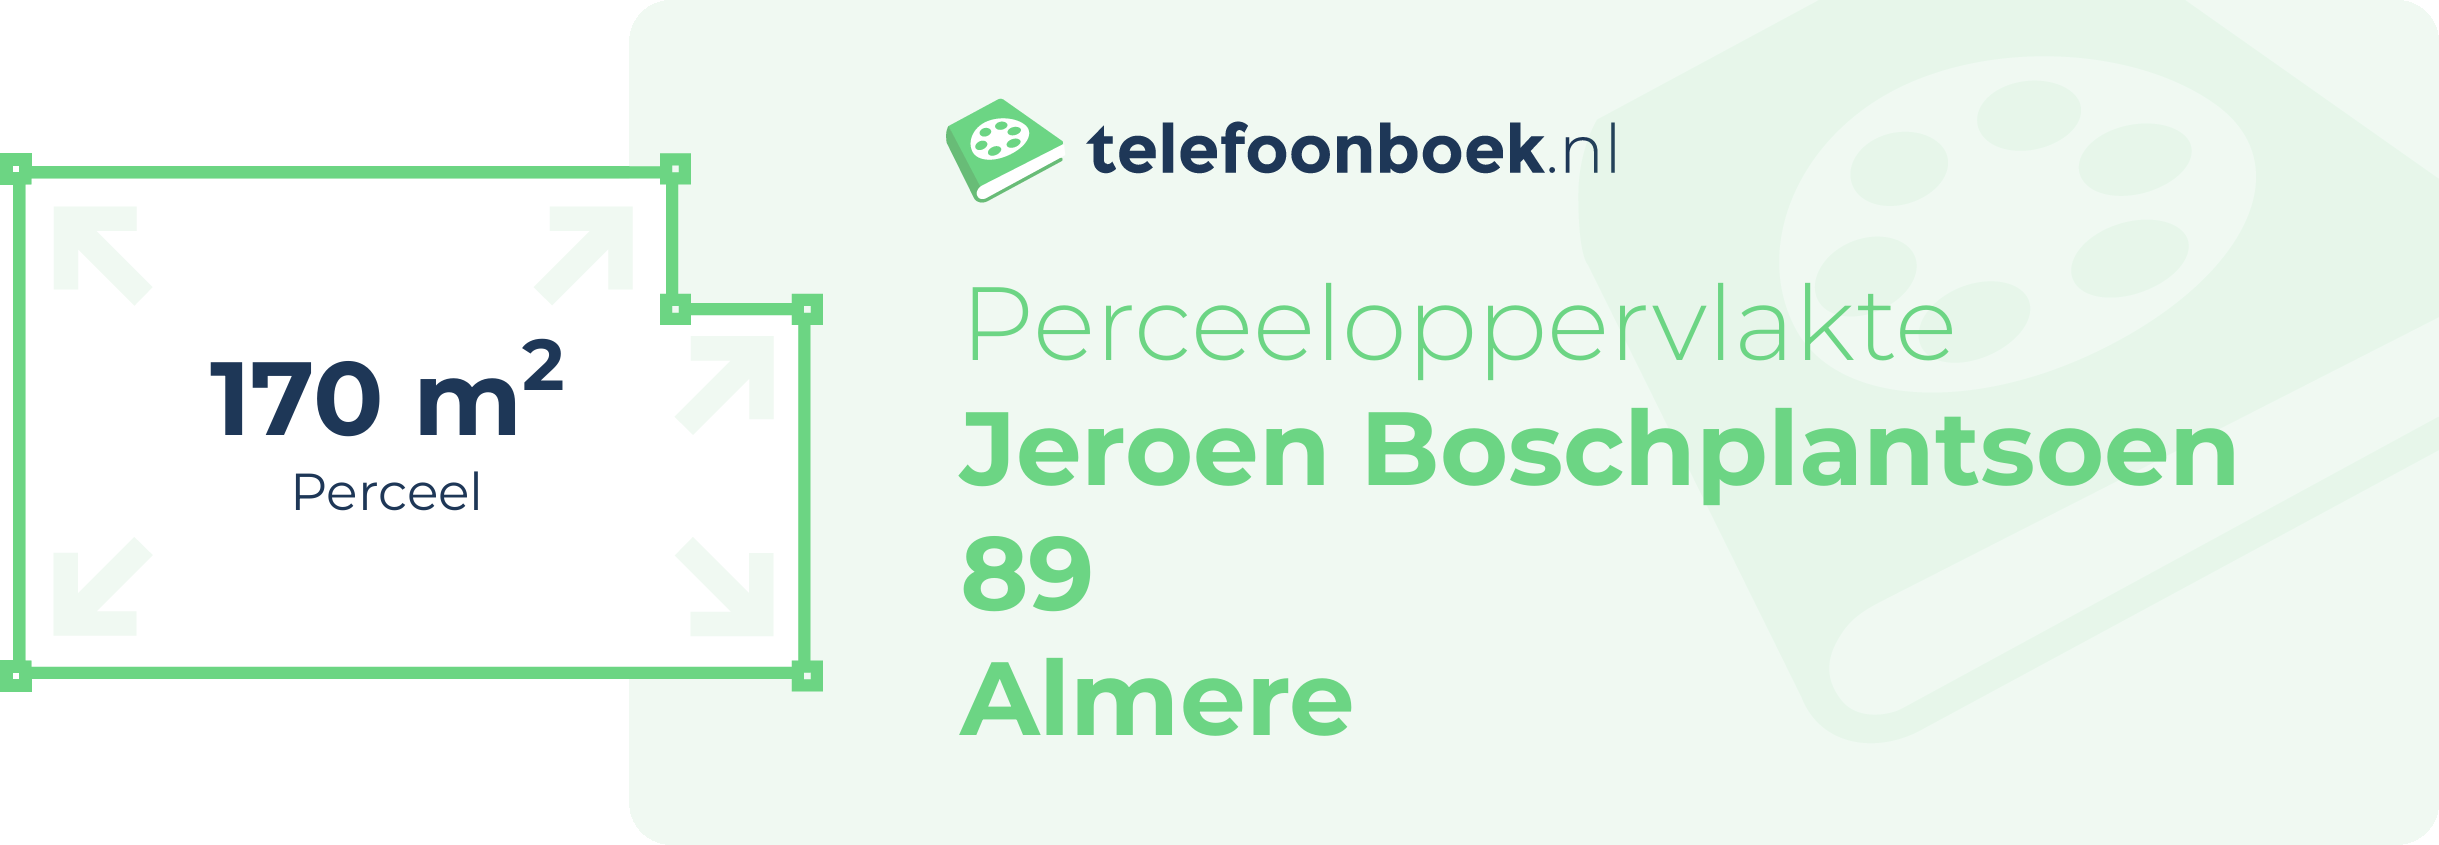 Perceeloppervlakte Jeroen Boschplantsoen 89 Almere